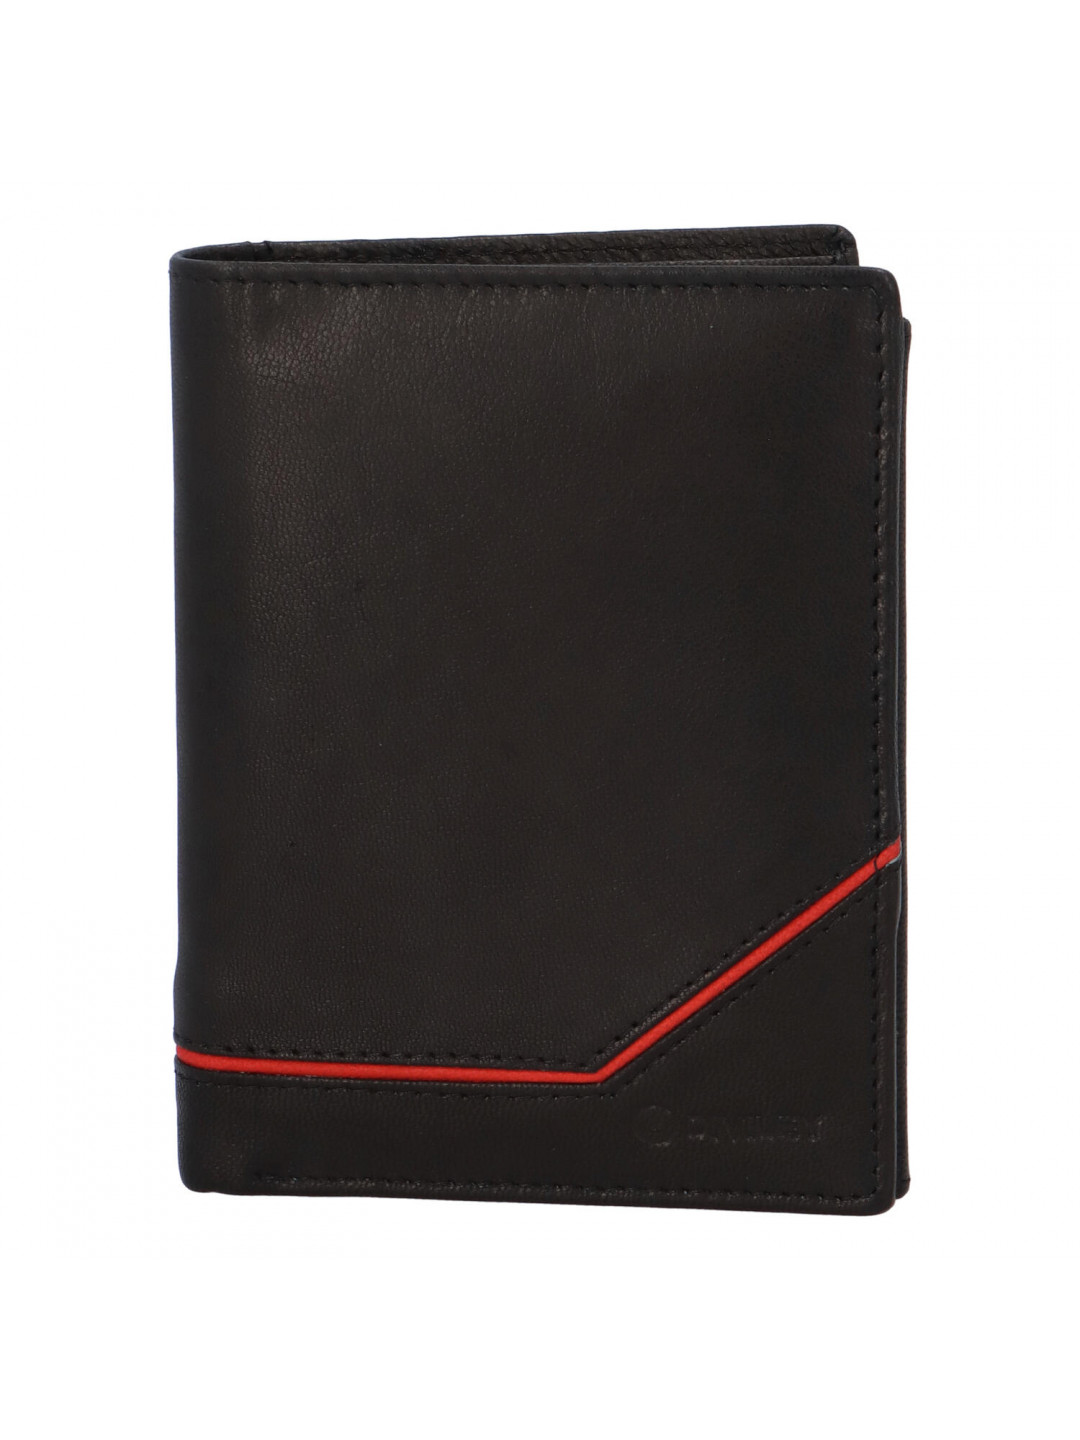 Pánská kožená peněženka černá – Diviley Rouhan R